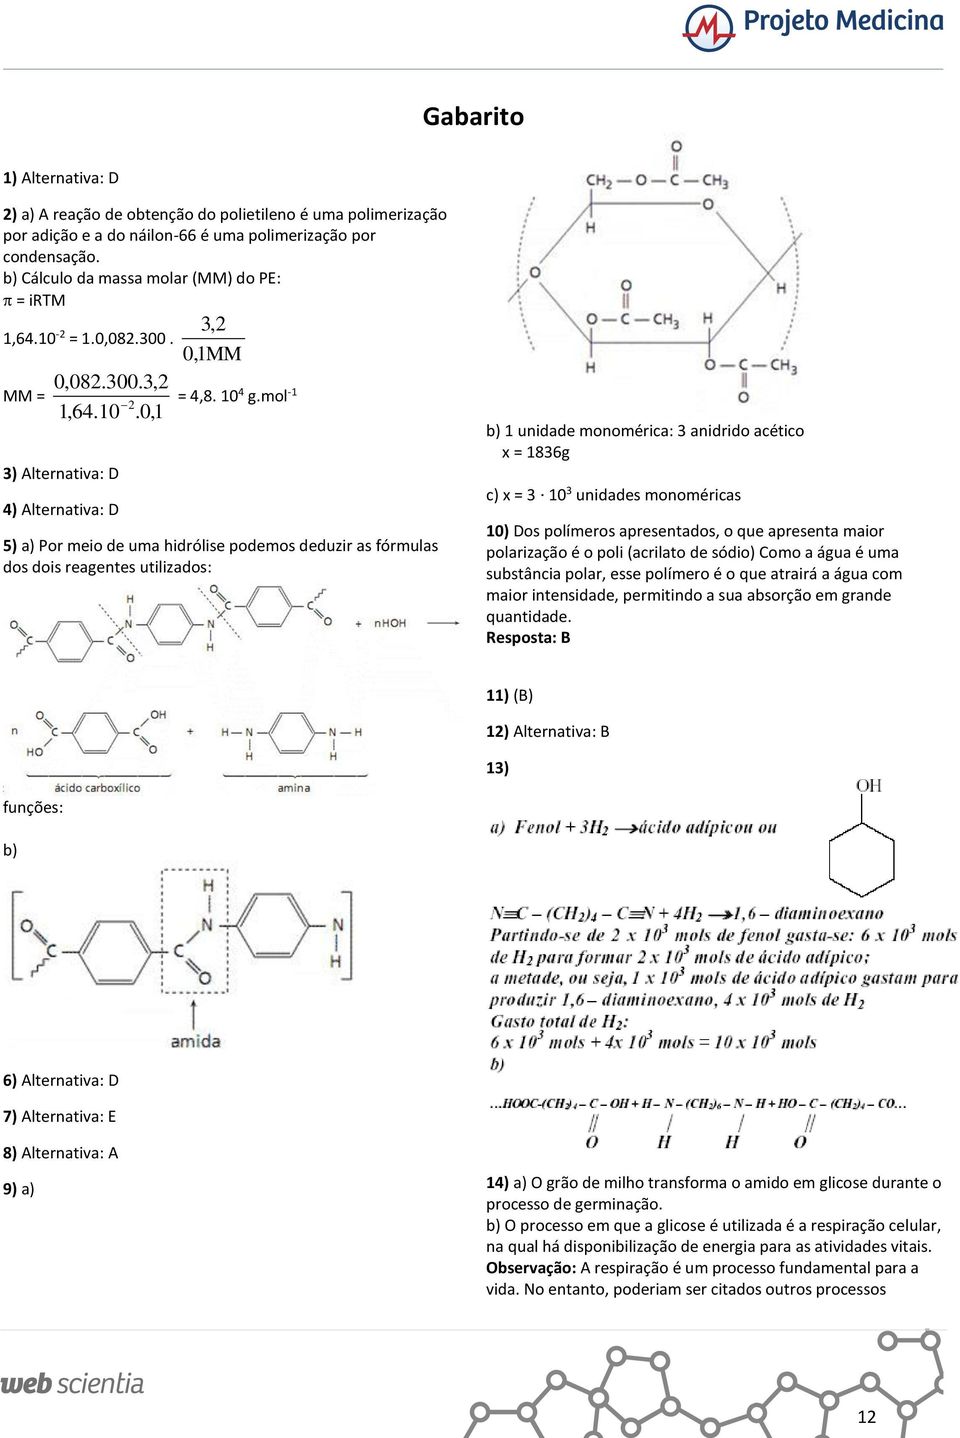 mol -1 5) a) Por meio de uma hidrólise podemos deduzir as fórmulas dos dois reagentes utilizados: 1 unidade monomérica: 3 anidrido acético x = 1836g c) x = 3 10 3 unidades monoméricas 10) Dos